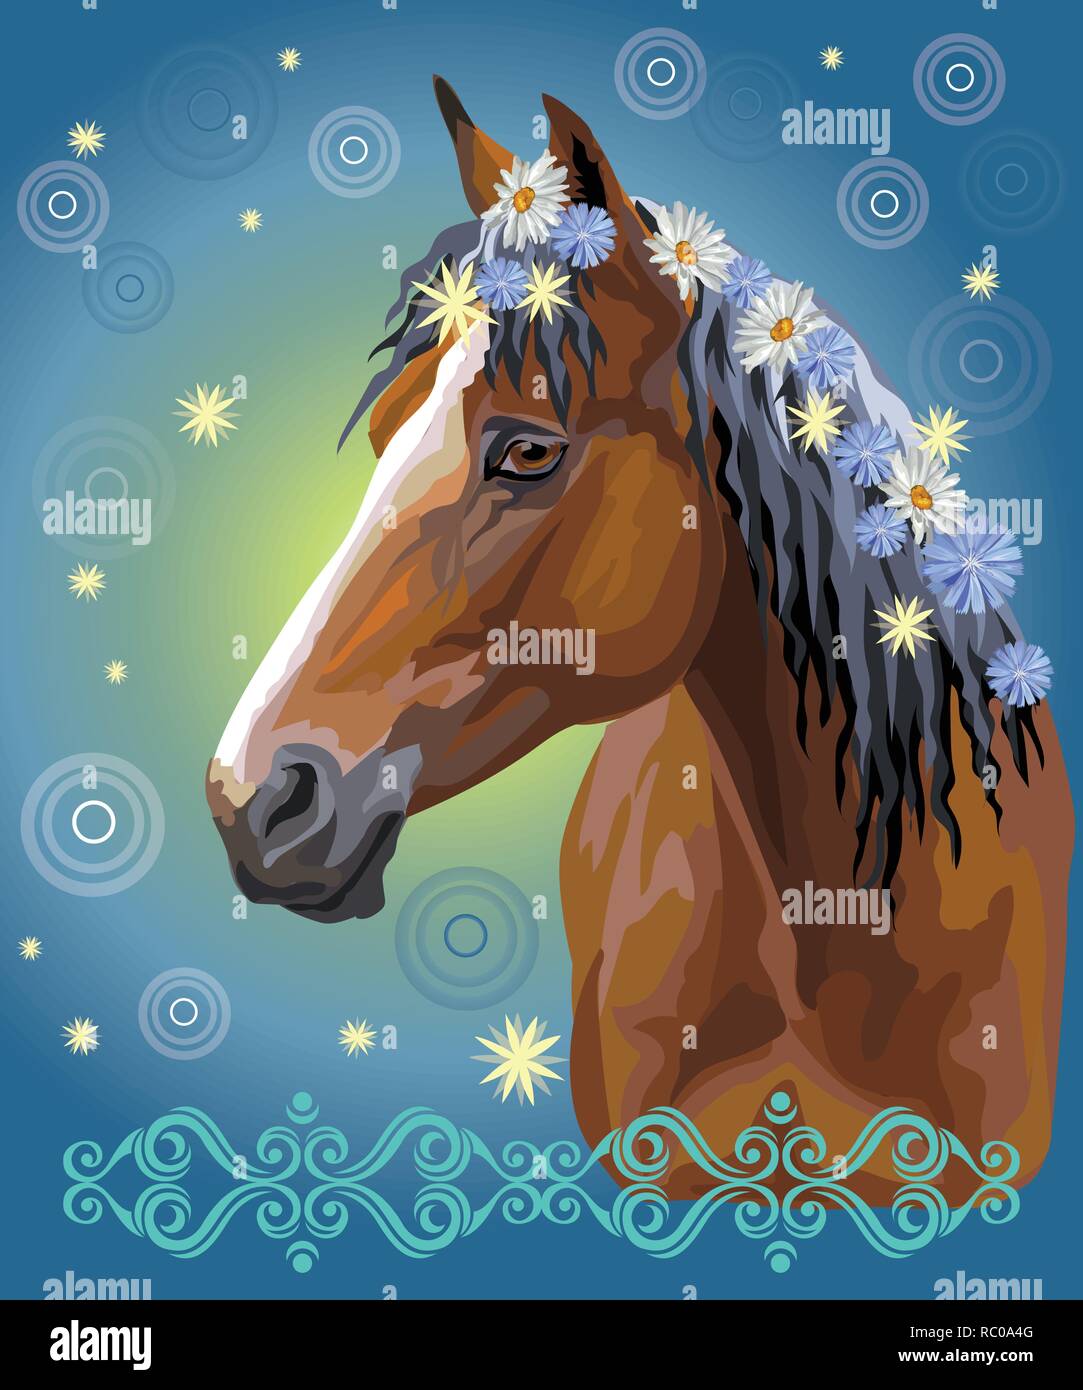 Vektor bunten Illustrationen. Portrait von Bay Horse mit verschiedenen Blumen, die in die mähne auf blauen Gradienten Hintergrund mit dekorativem Ornament isoliert und c Stock Vektor